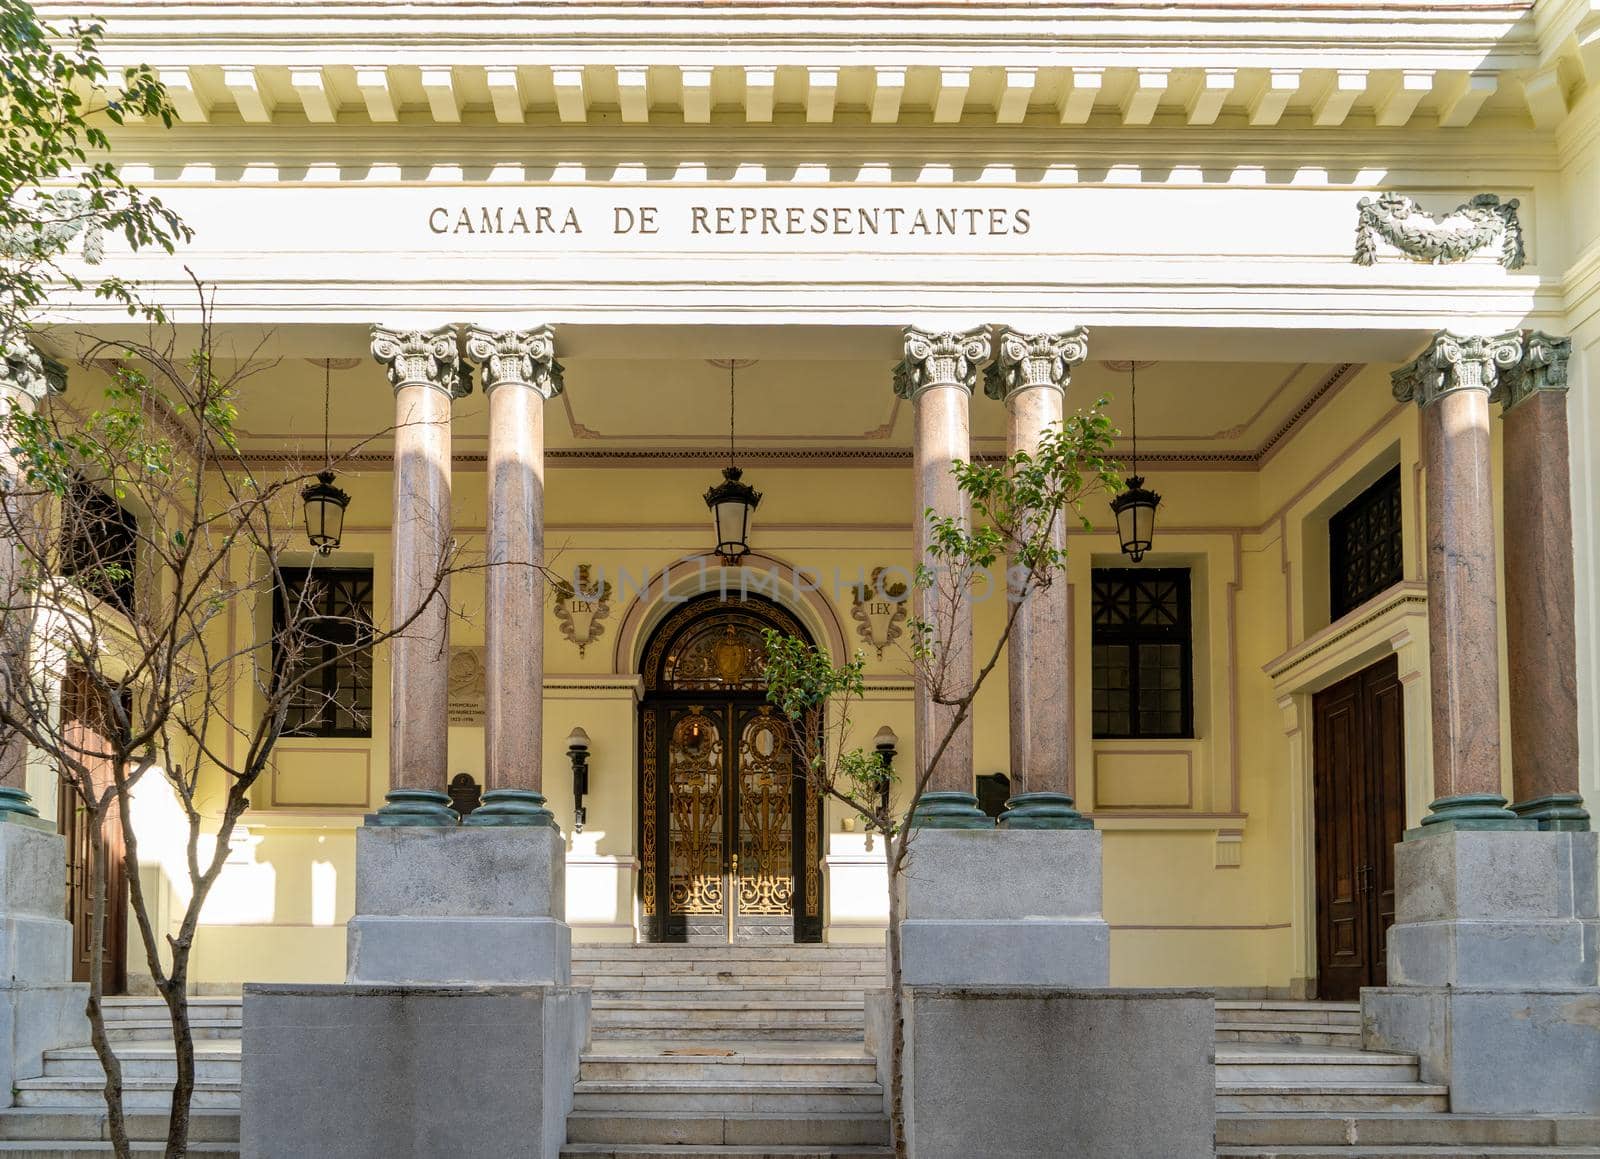 Camara de Representantes by jrivalta